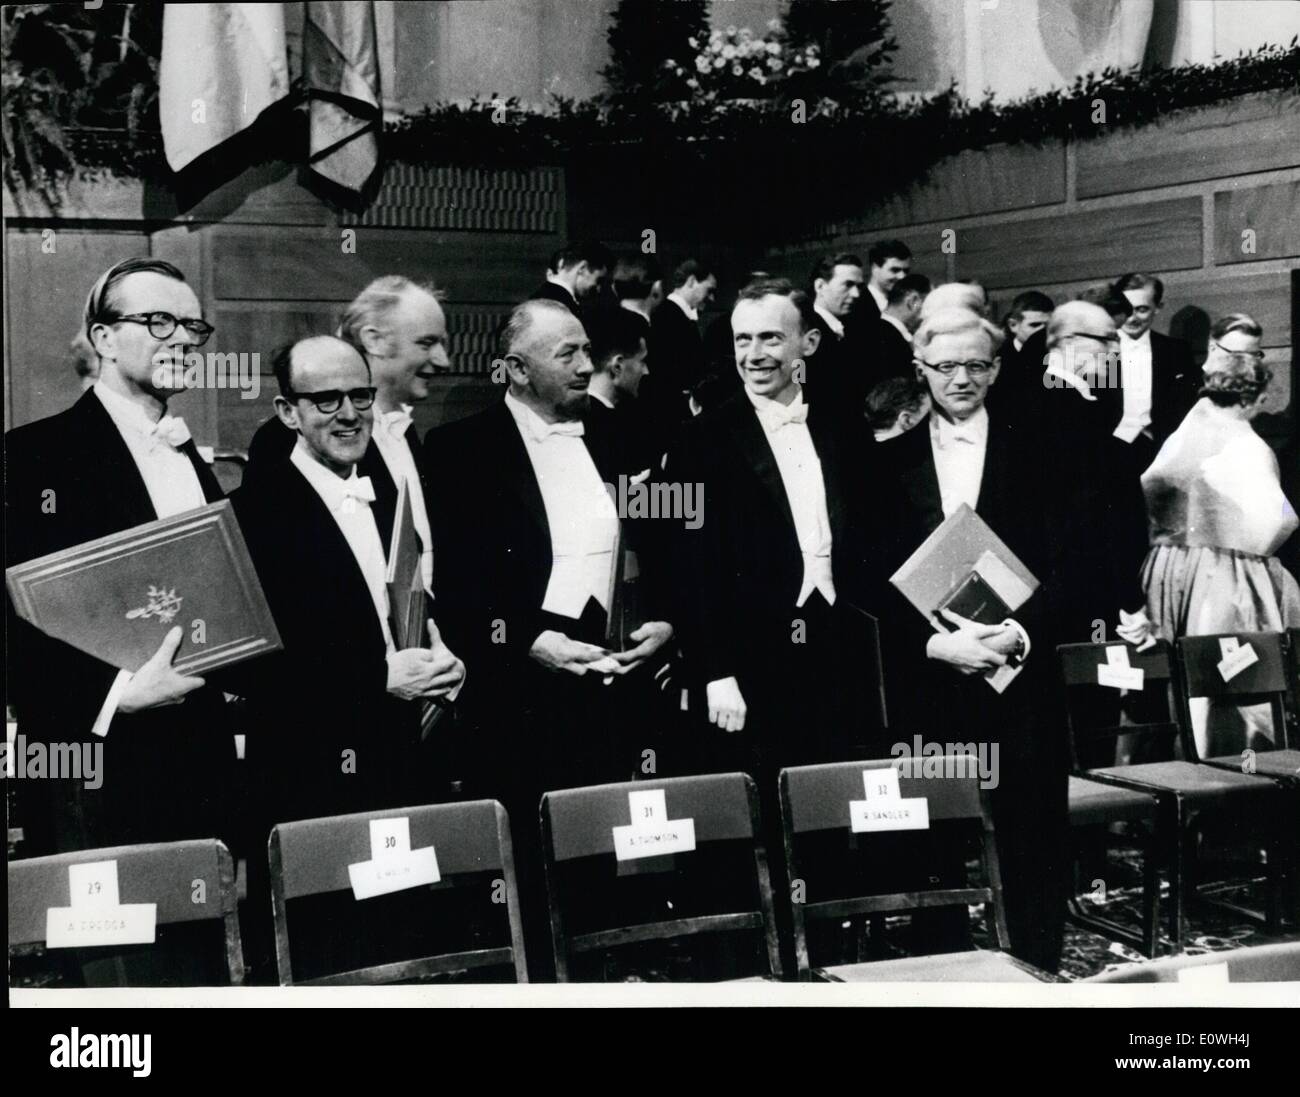 Le 12 décembre 1962 - Le Prix Nobel 1962 gagnants. : vu pendant la cérémonie de présentation à la Bourse de Stockholm sont certains des gagnants de prix de cette année. Sur la photo, de gauche à droite ils sont Professeur Maurice Wilkins, le Dr Max Perutz, le Dr Francis Crick, John Steinbeck, Prodessor James Watson et le Dr John C Kendrew. Banque D'Images